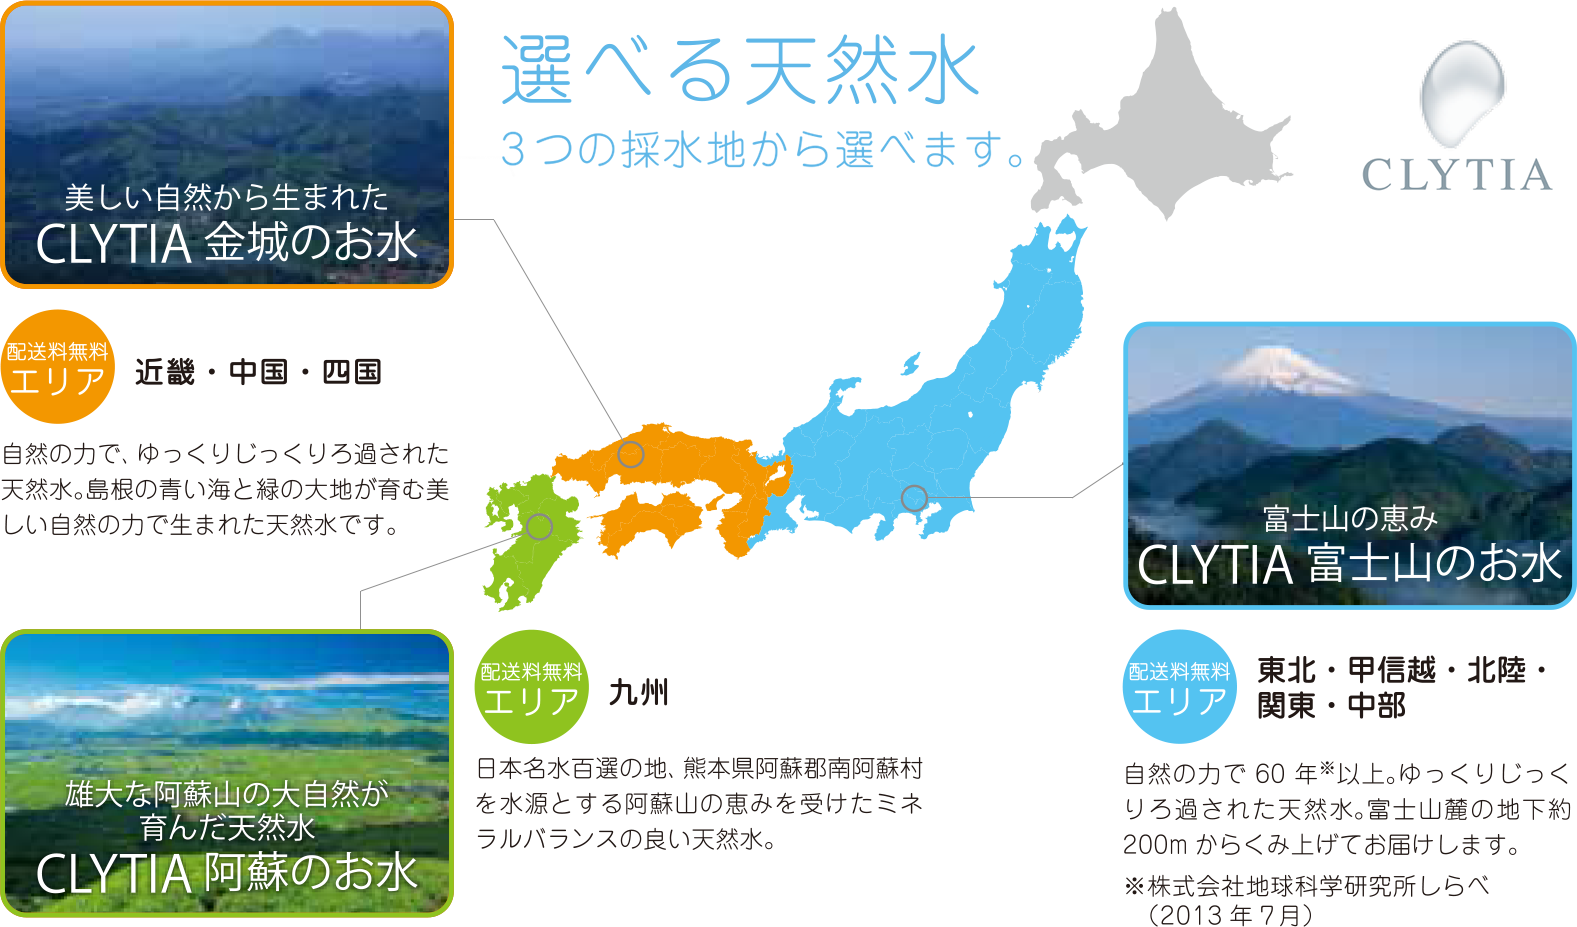 選べる天然水 3つの採水地から選べます。金城、富士山、阿蘇